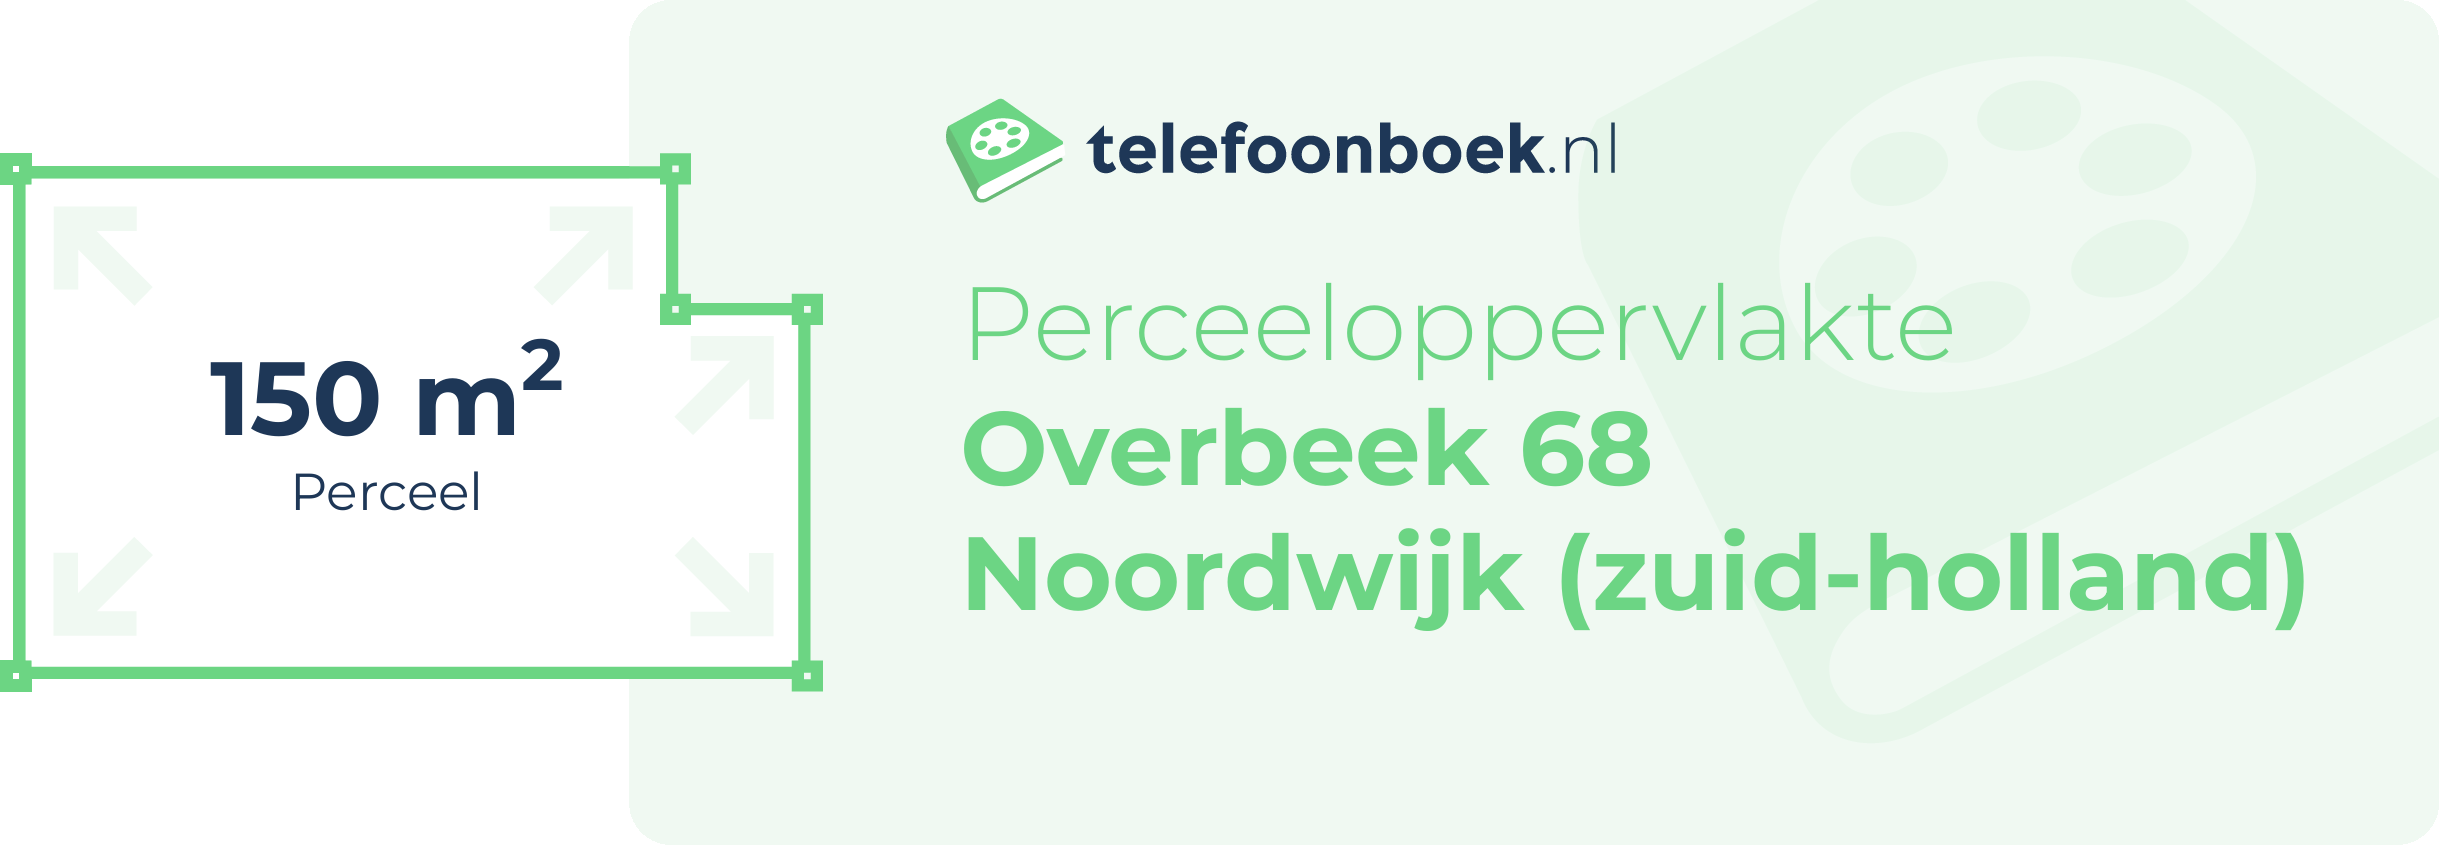 Perceeloppervlakte Overbeek 68 Noordwijk (Zuid-Holland)